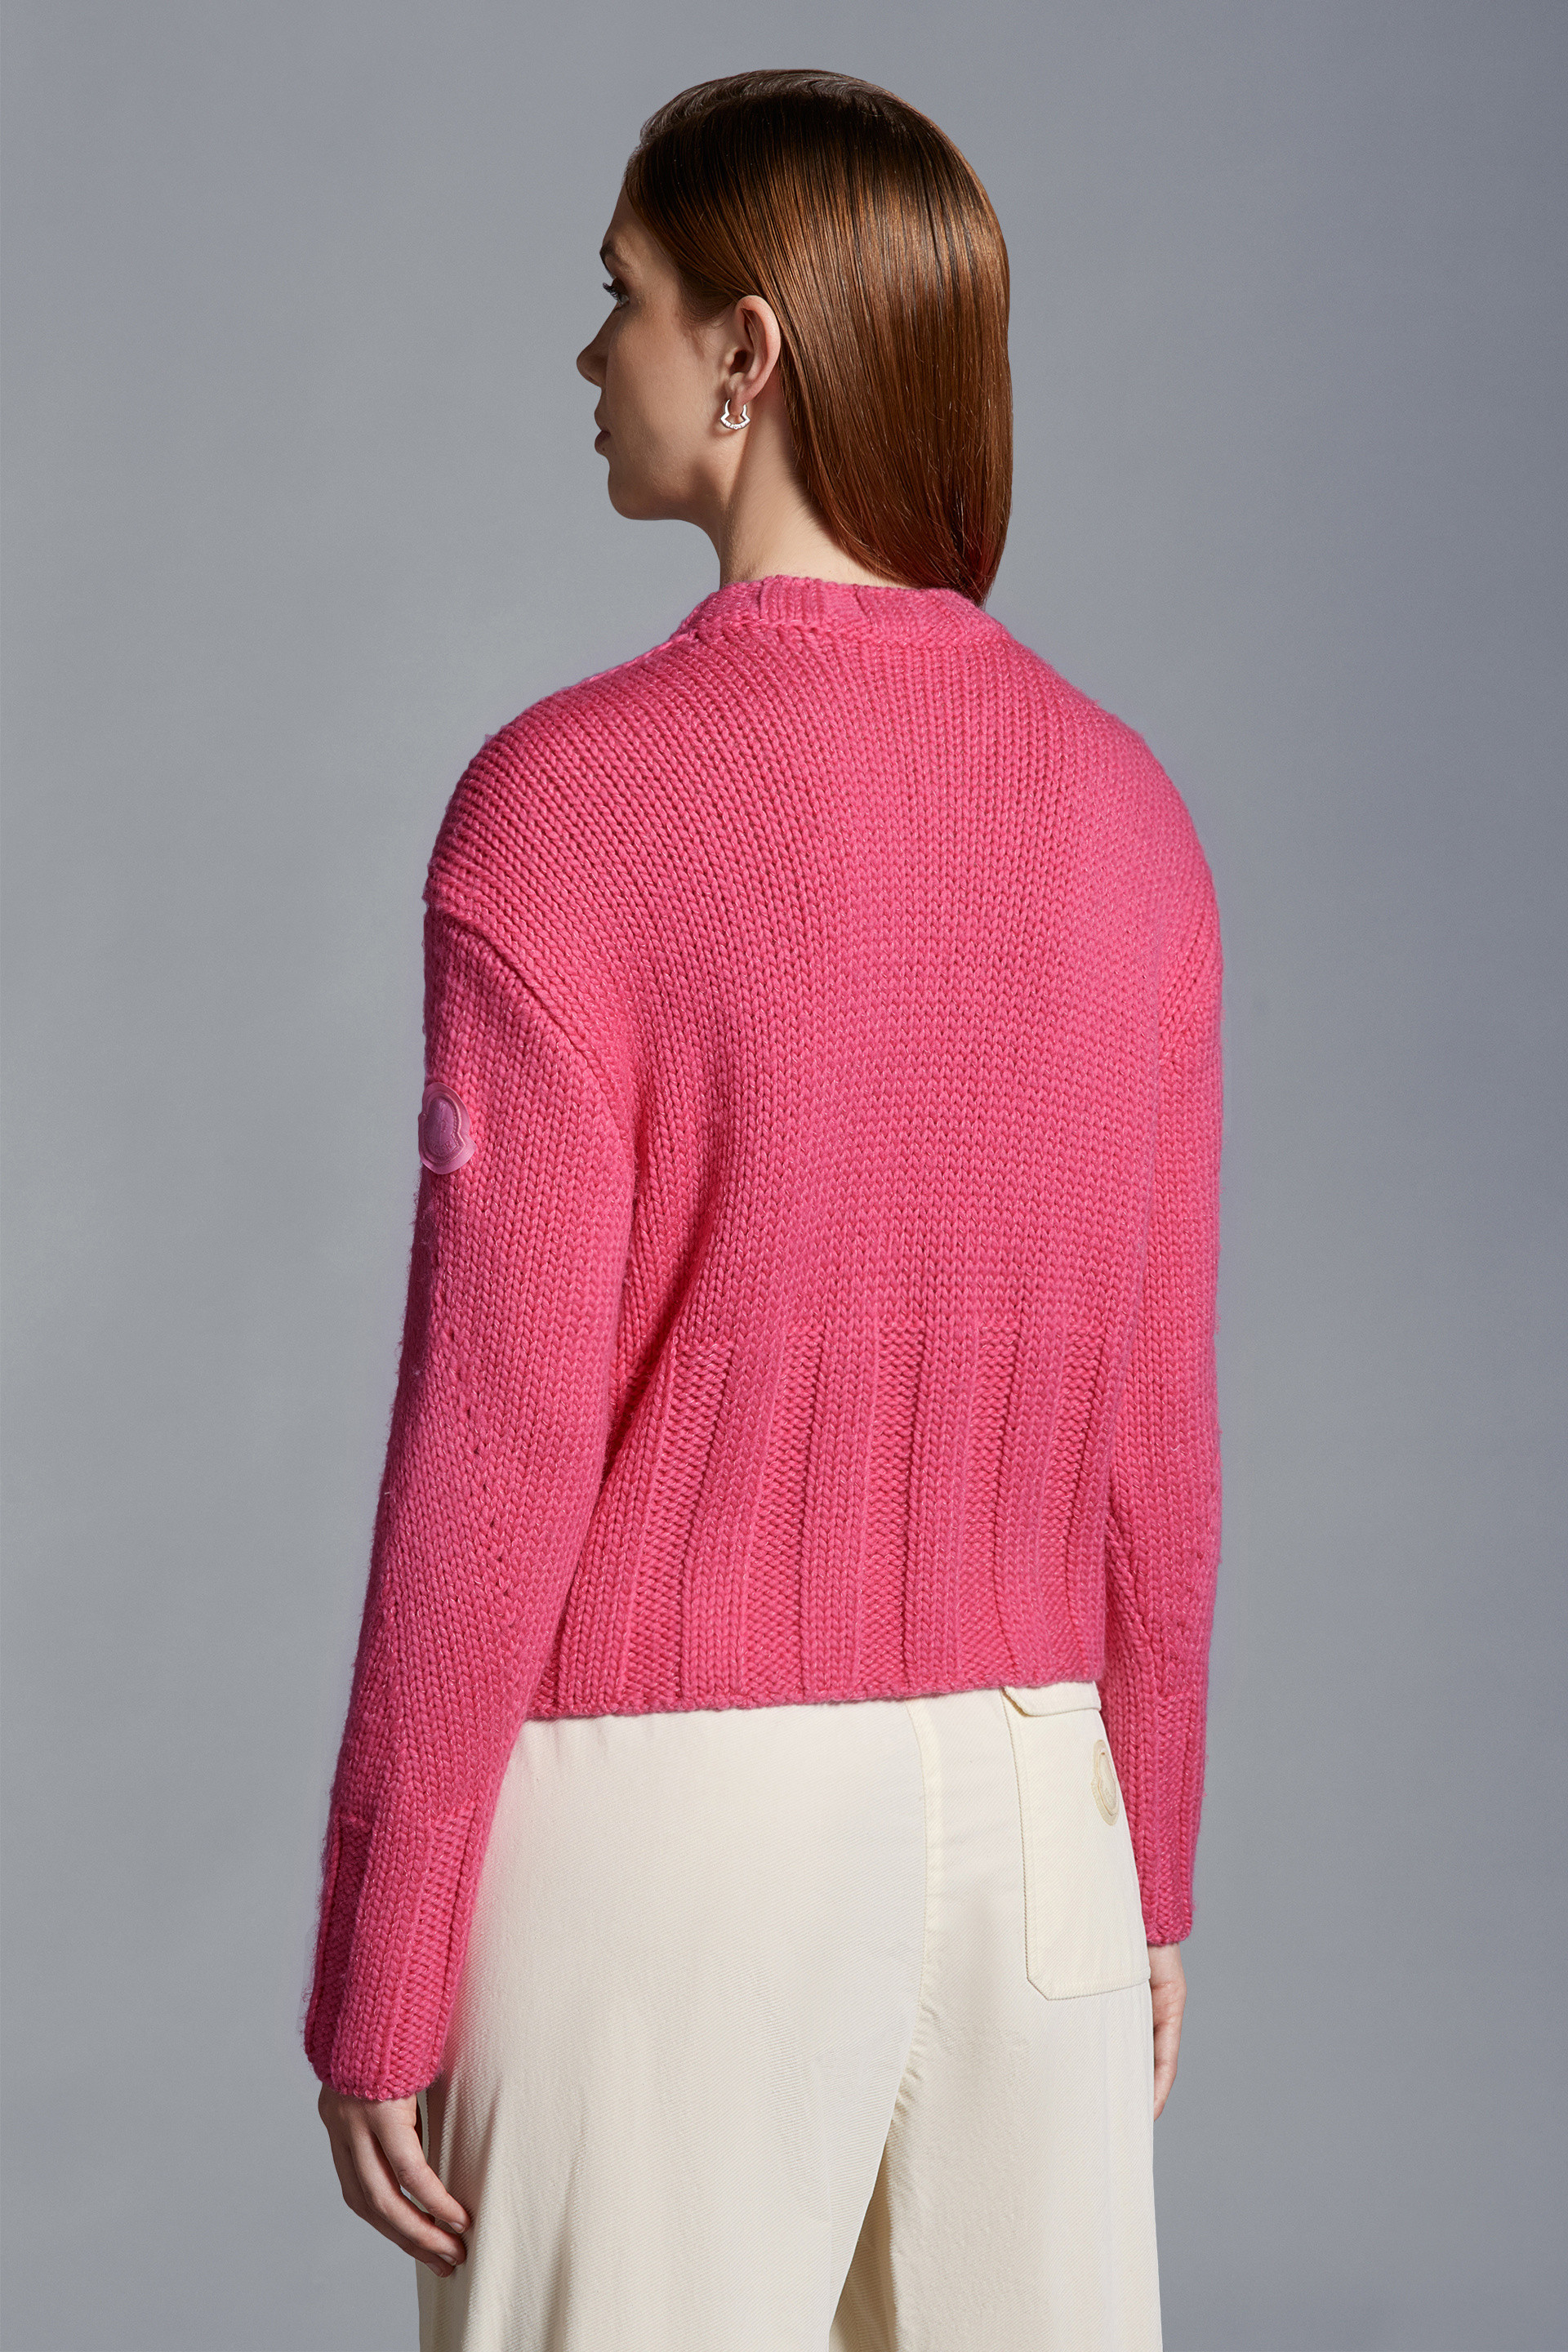 ピンク セーター : セーター＆カーディガン 向けの レディース 